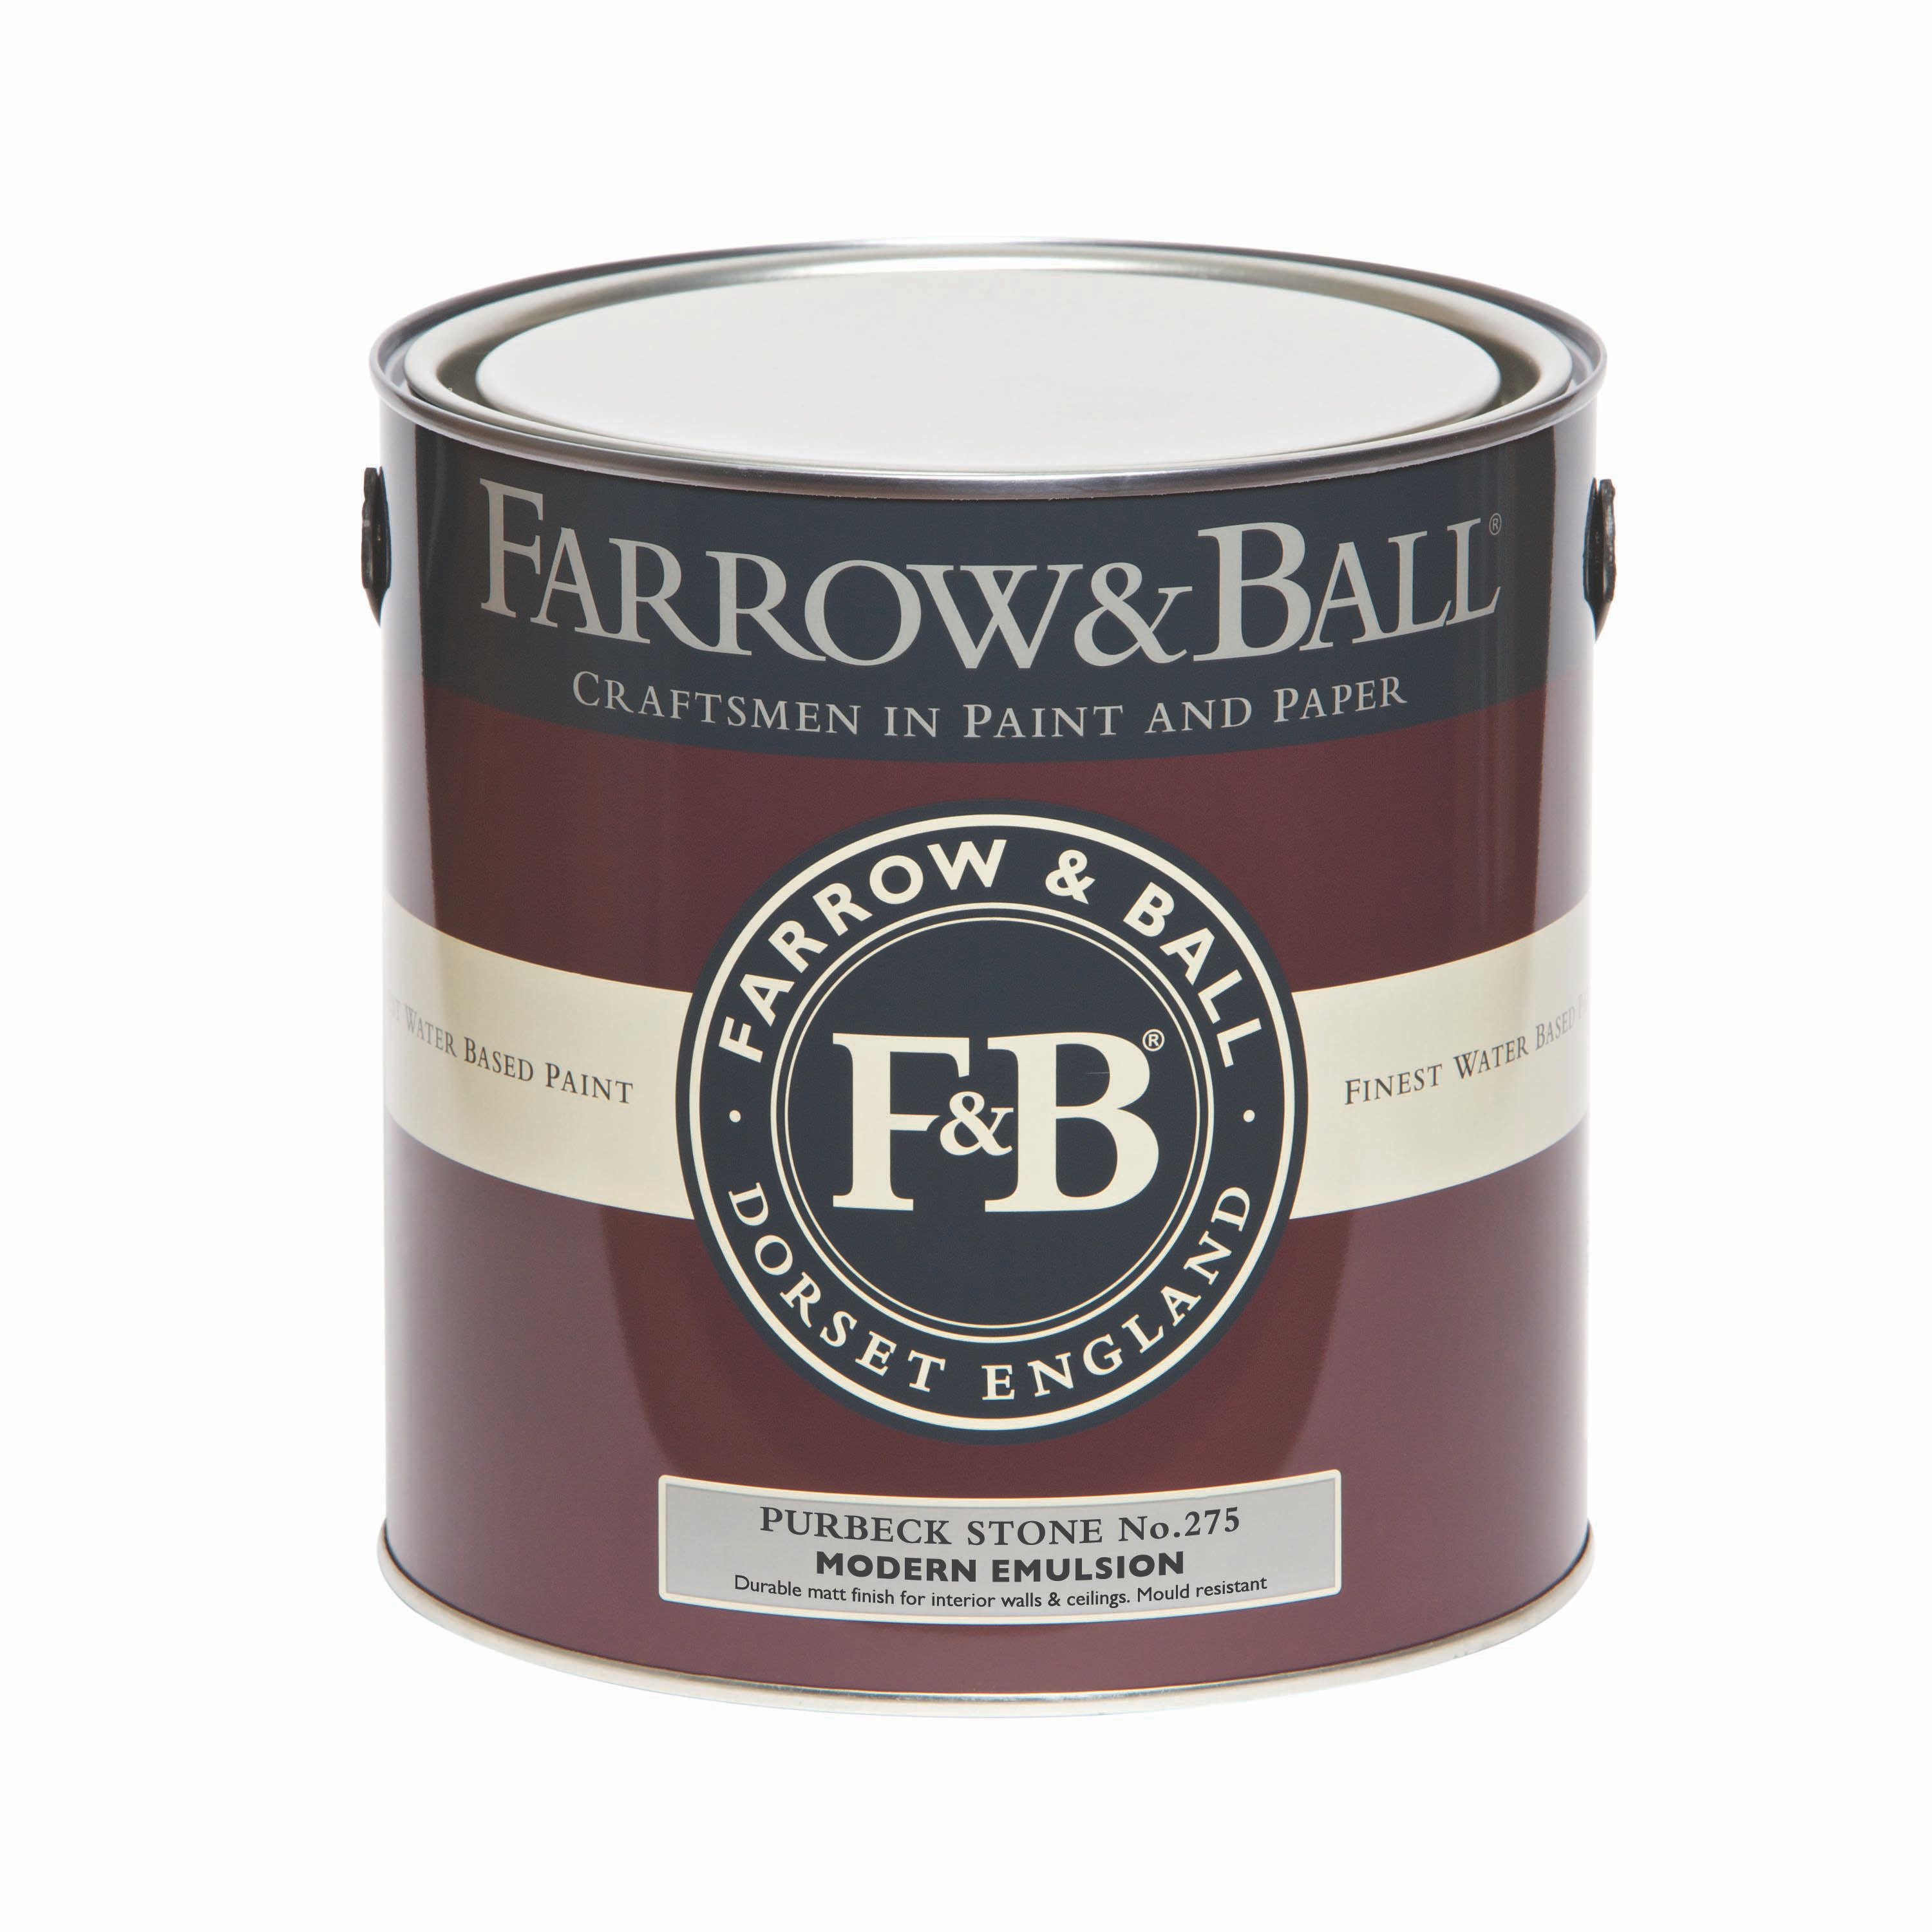 Farrow & Ball Modern Purbeck stone No.275 Matt Emulsion paint, 2.5L